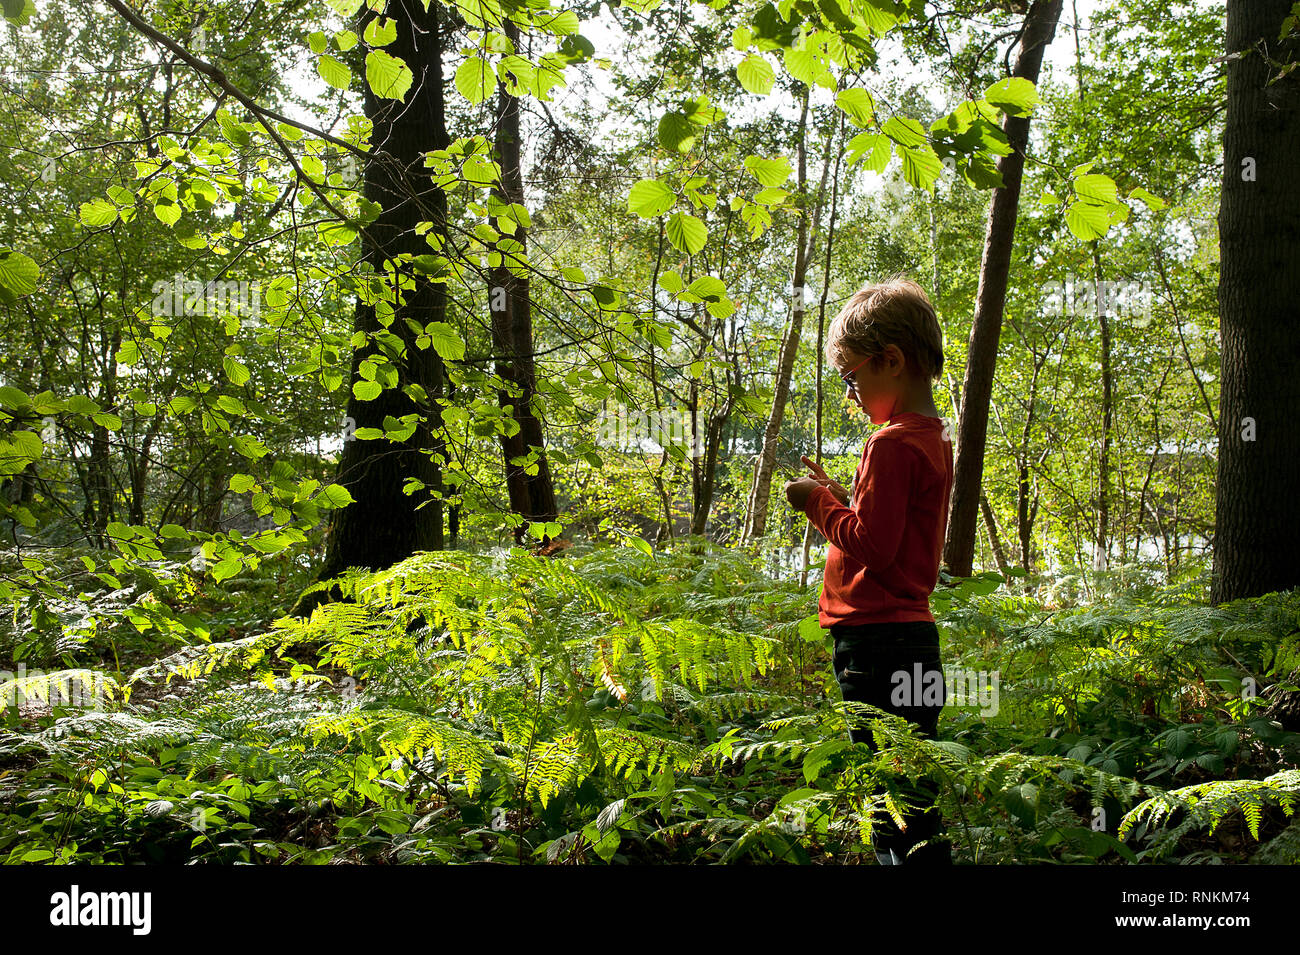 Bambino sul suo proprio in un sottobosco della foresta demaniale di Raismes-Saint-Amand-Wallers, riserva naturale dell'Scarpe-Escaut Parco Naturale Regionale Foto Stock